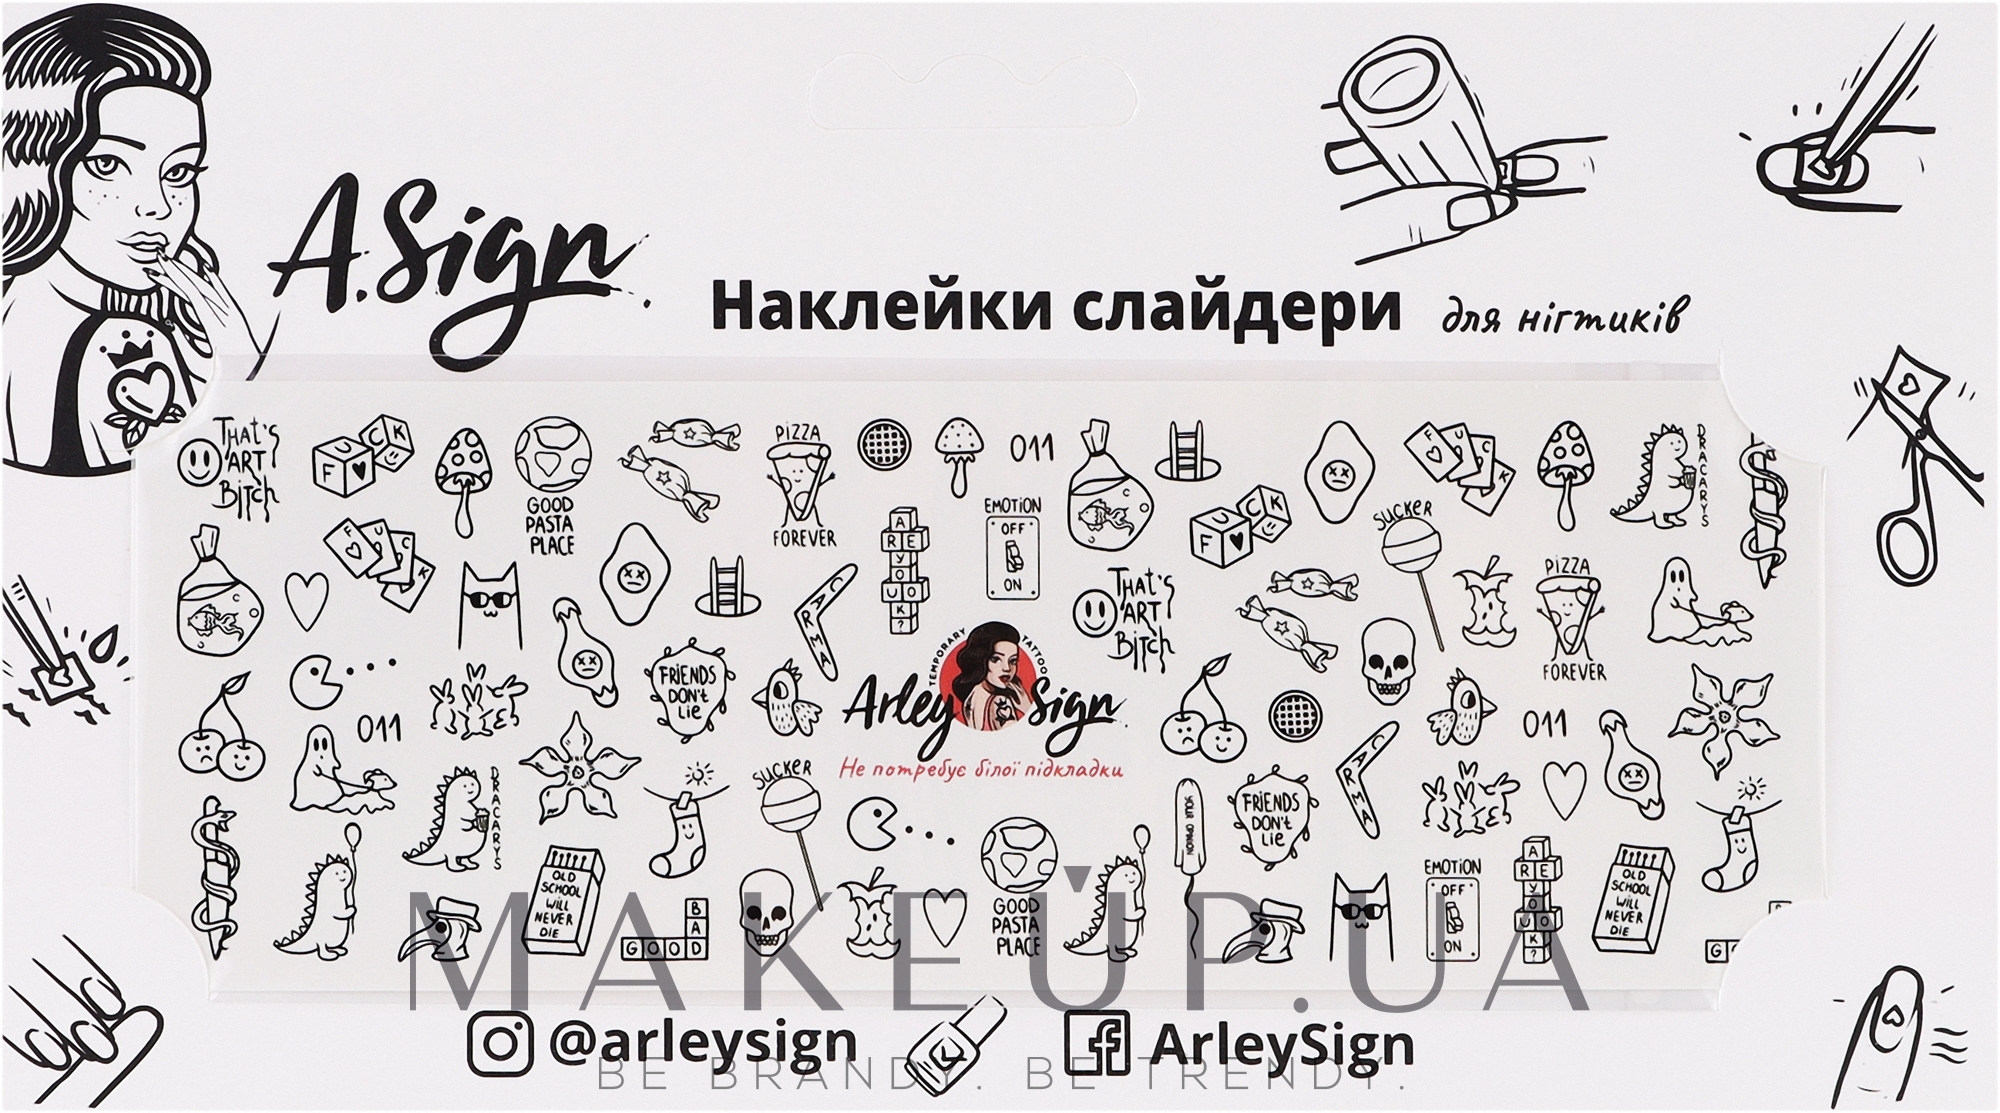 Наклейка-слайдер для ногтей "Из-под карандаша" - Arley Sign  — фото 3g